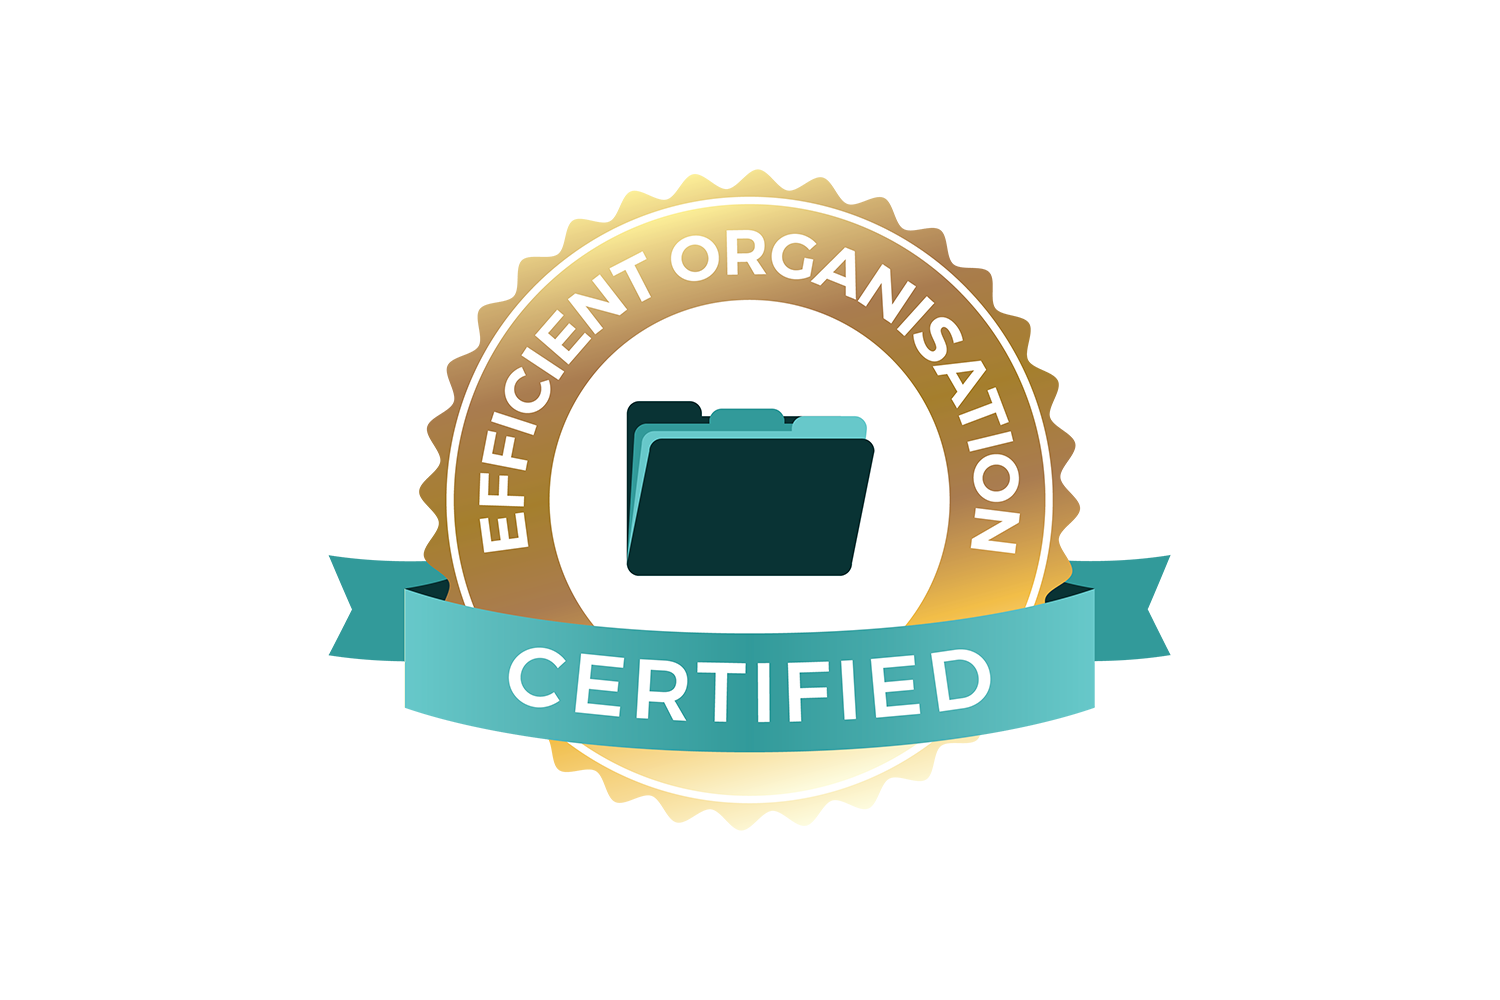 Efficient Organisation Certified